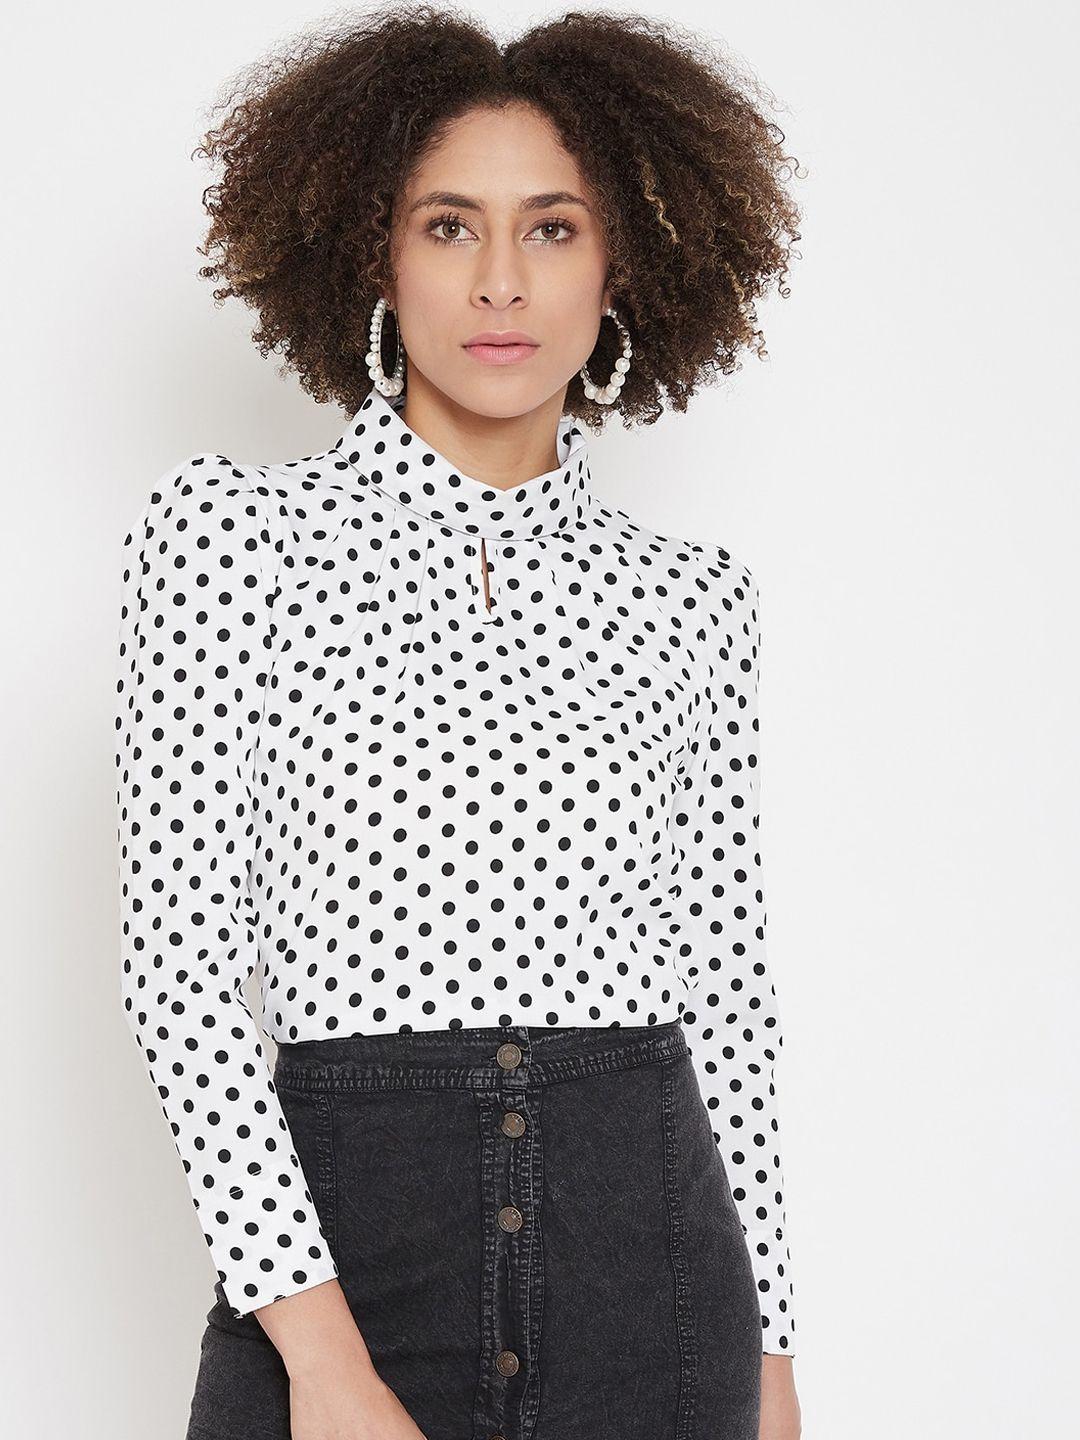 la-zoire-women-white-&-black-polka-dots-printed-top